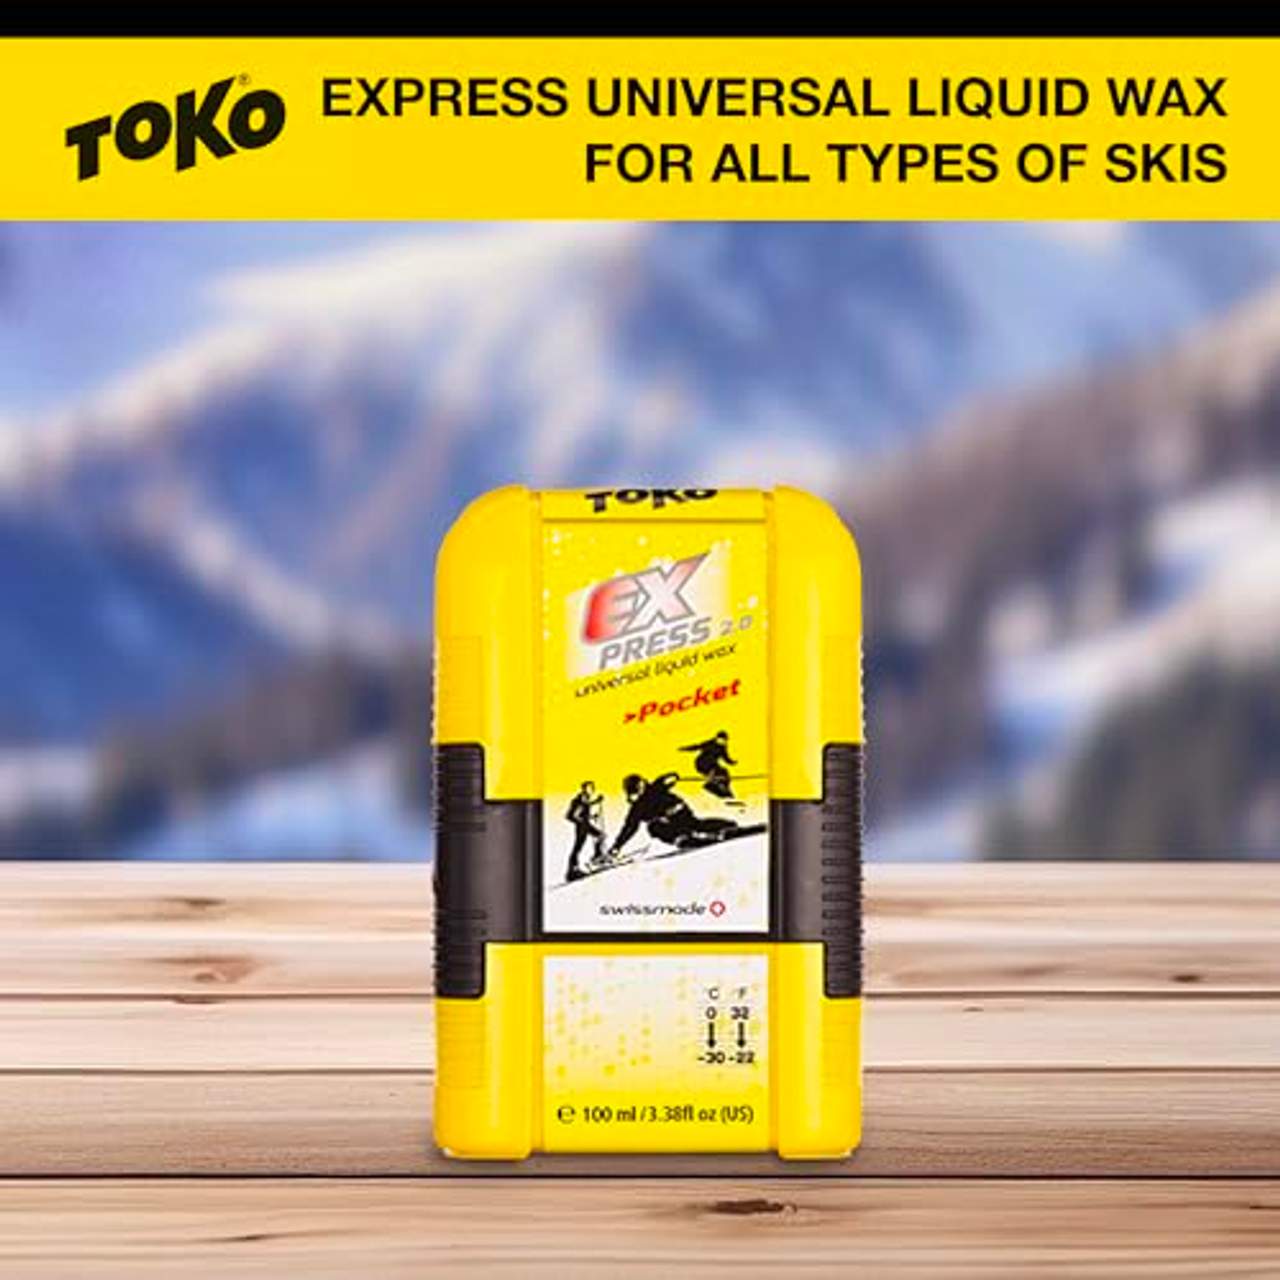 Toko Express Pocket Skiwachs